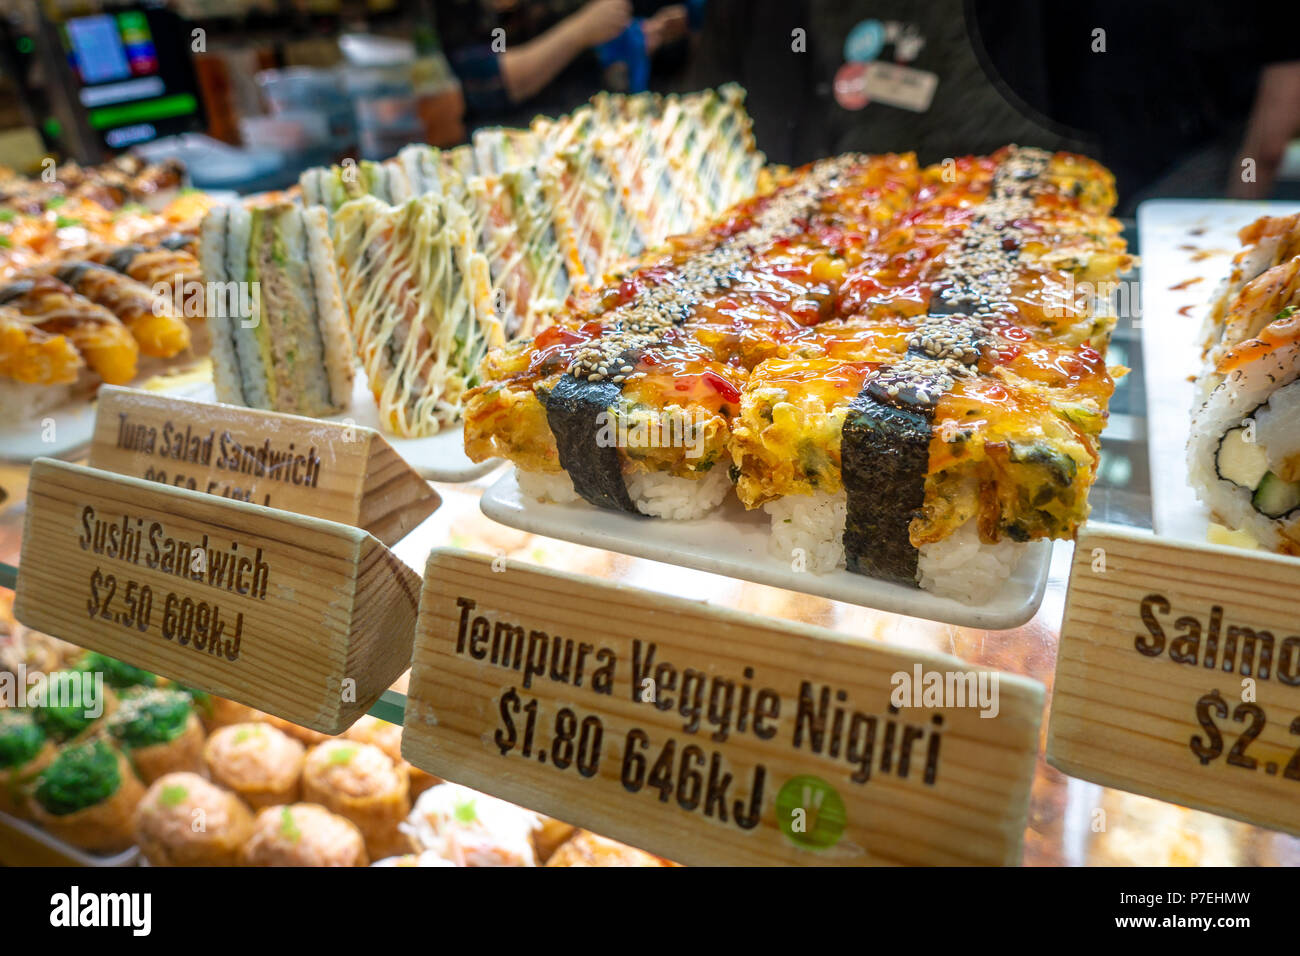 Diversi tipi di sushi visualizzato nel contatore con nome inglese, calorie e il prezzo indicato su ogni tag. Melbourne VIC Australia. Foto Stock